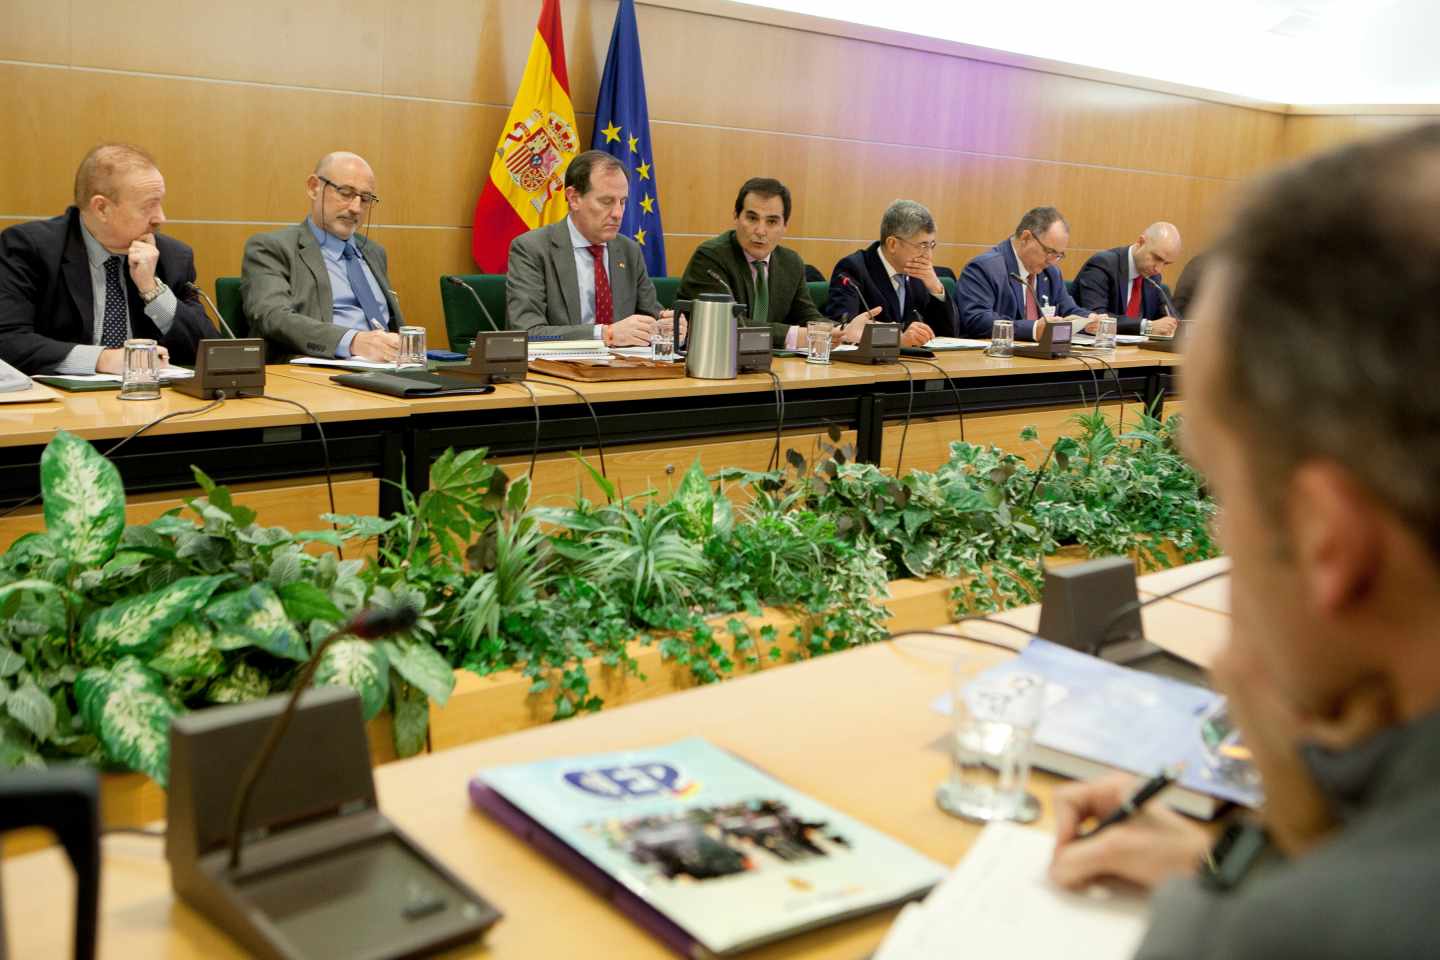 El secretario de Estado de Seguridad, José Antonio Nieto, y los representantes de los agentes en la reunión en la que se alcanzó el preacuerdo.